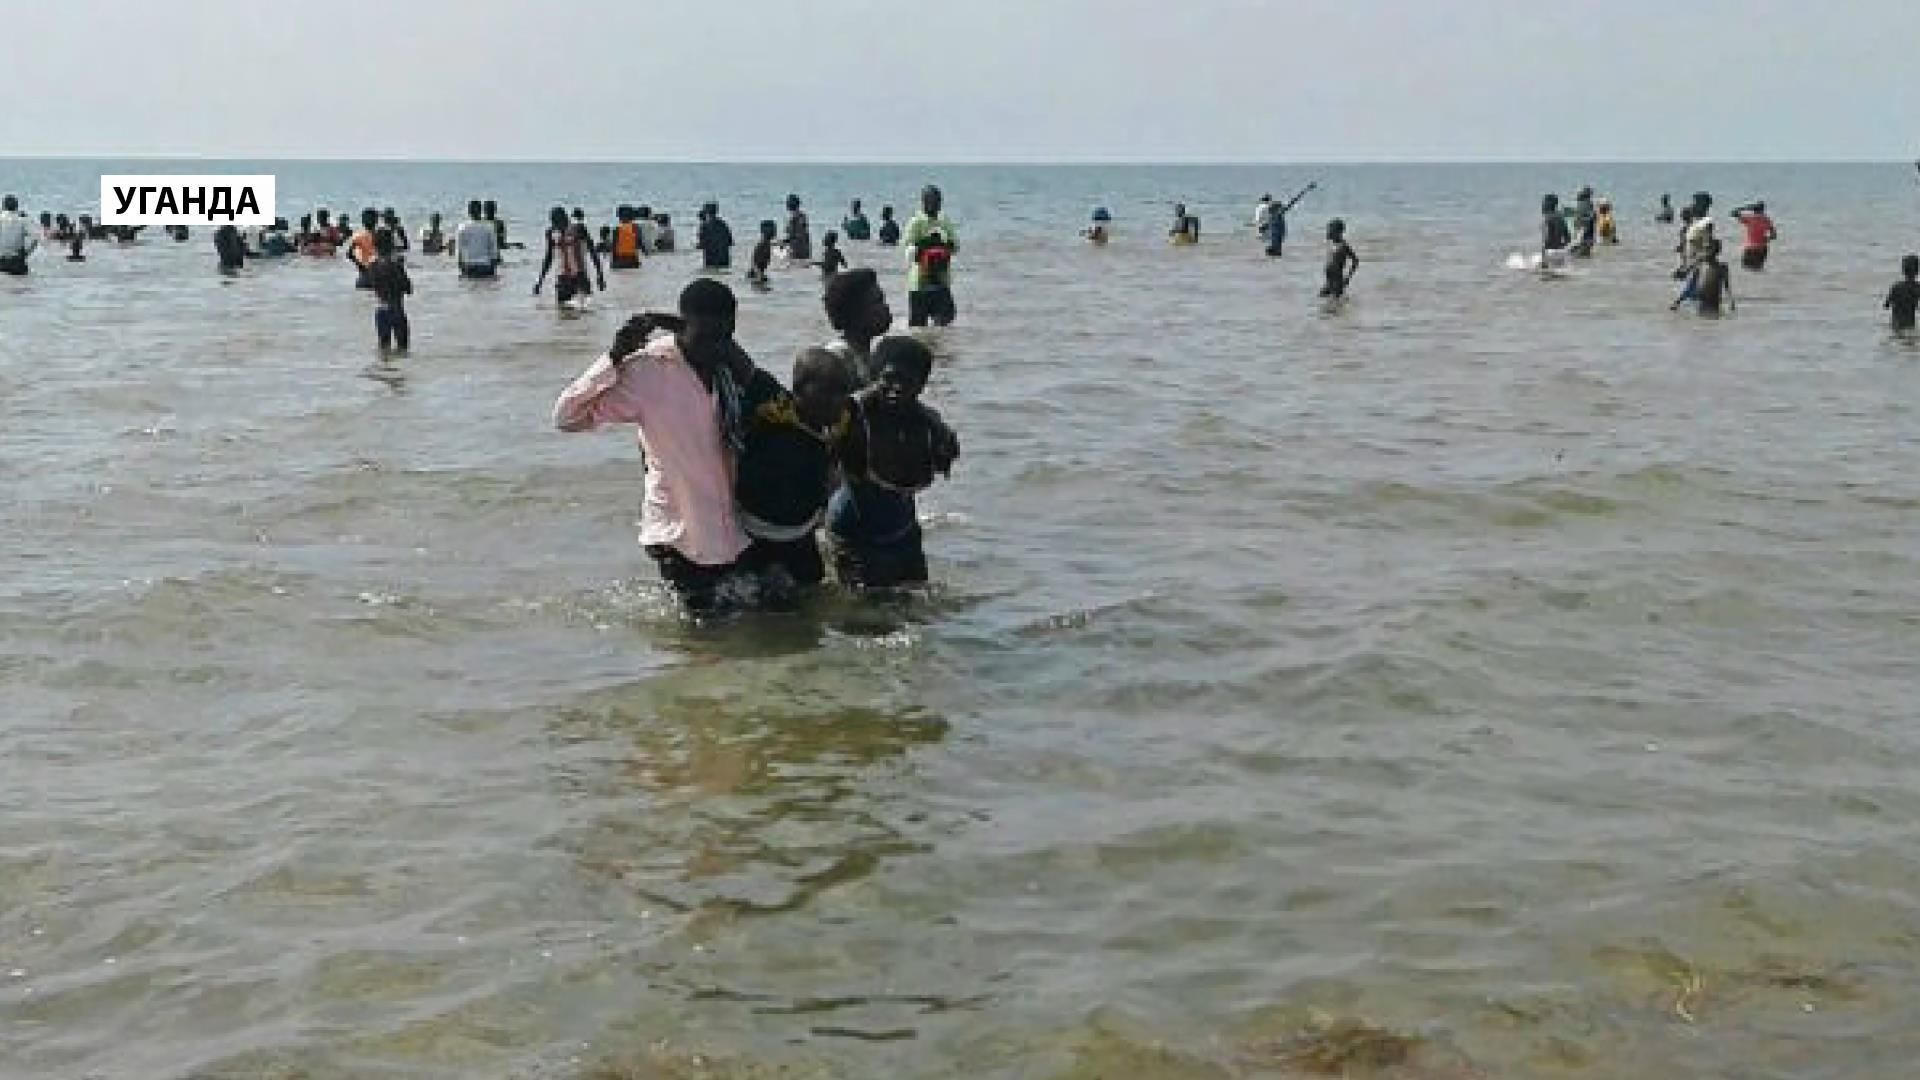 Футбольная команда утонула вместе с болельщиками в Уганде